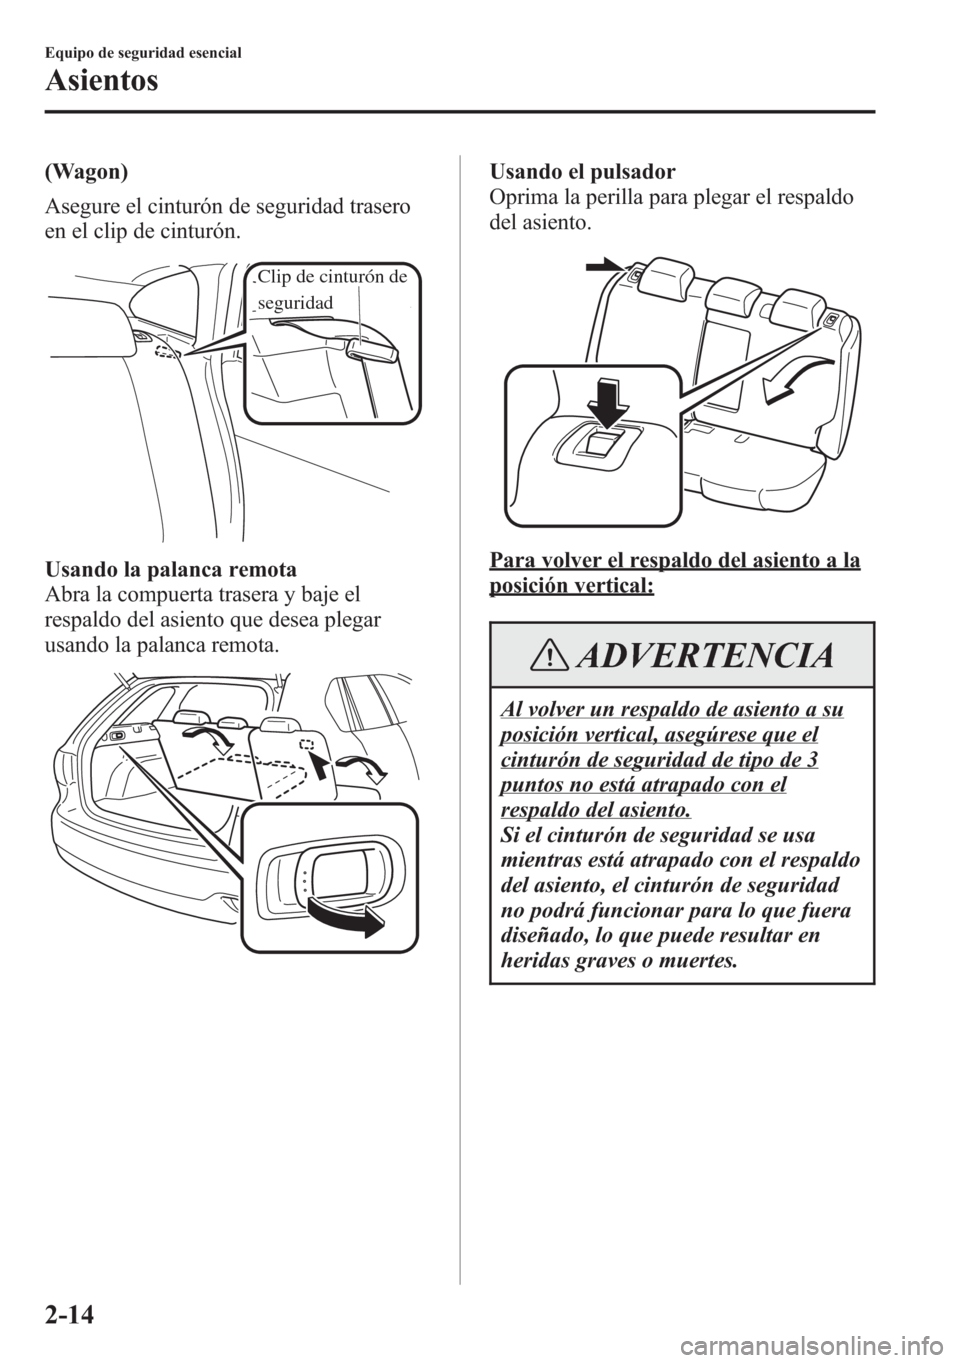 MAZDA MODEL 6 2015  Manual del propietario (in Spanish) (Wagon)
Asegure el cinturón de seguridad trasero
en el clip de cinturón.
Clip de cinturón de 
seguridad
Usando la palanca remota
Abra la compuerta trasera y baje el
respaldo del asiento que desea p